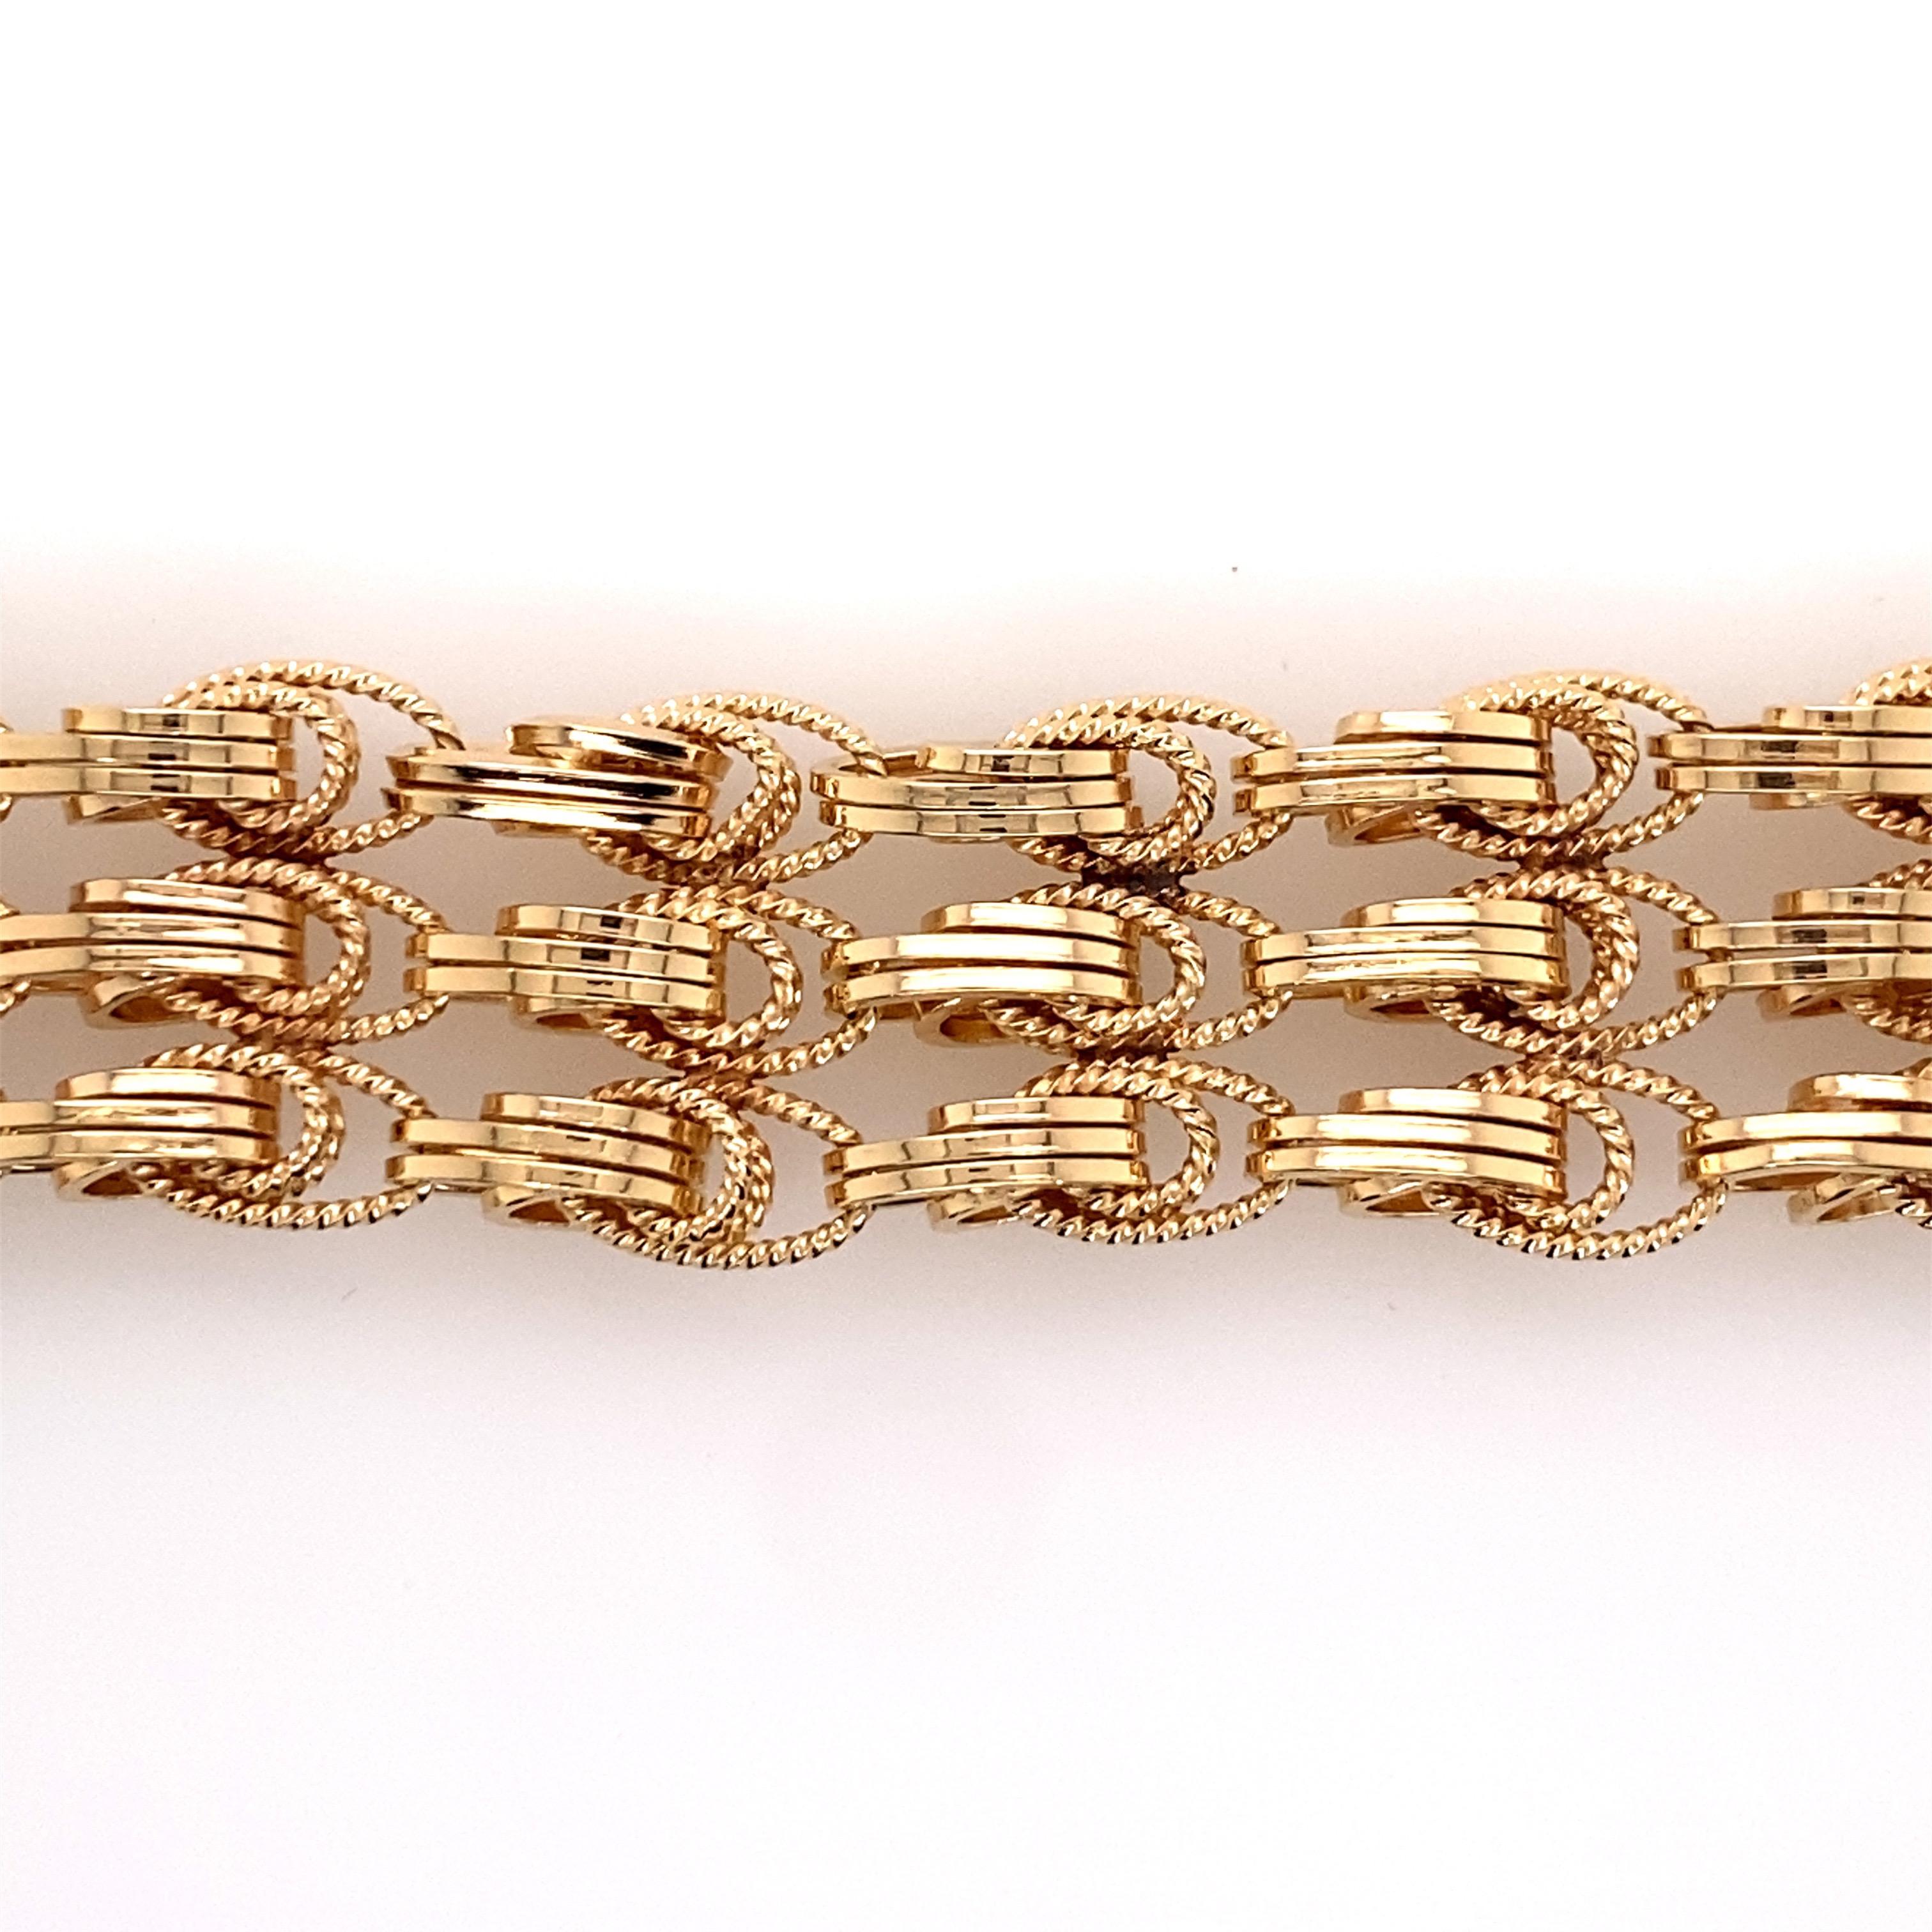 Vintage 1980's 14K Gelbgold 3 Row Wide Link Bracelet - Das Armband misst 7 Zoll lang und 3/4 Zoll breit. Das Armband verfügt über einen verdeckten Druckknopfverschluss mit einer 8-fachen Sicherung. Das Gewicht des Armbands beträgt 48.8 Gramm.